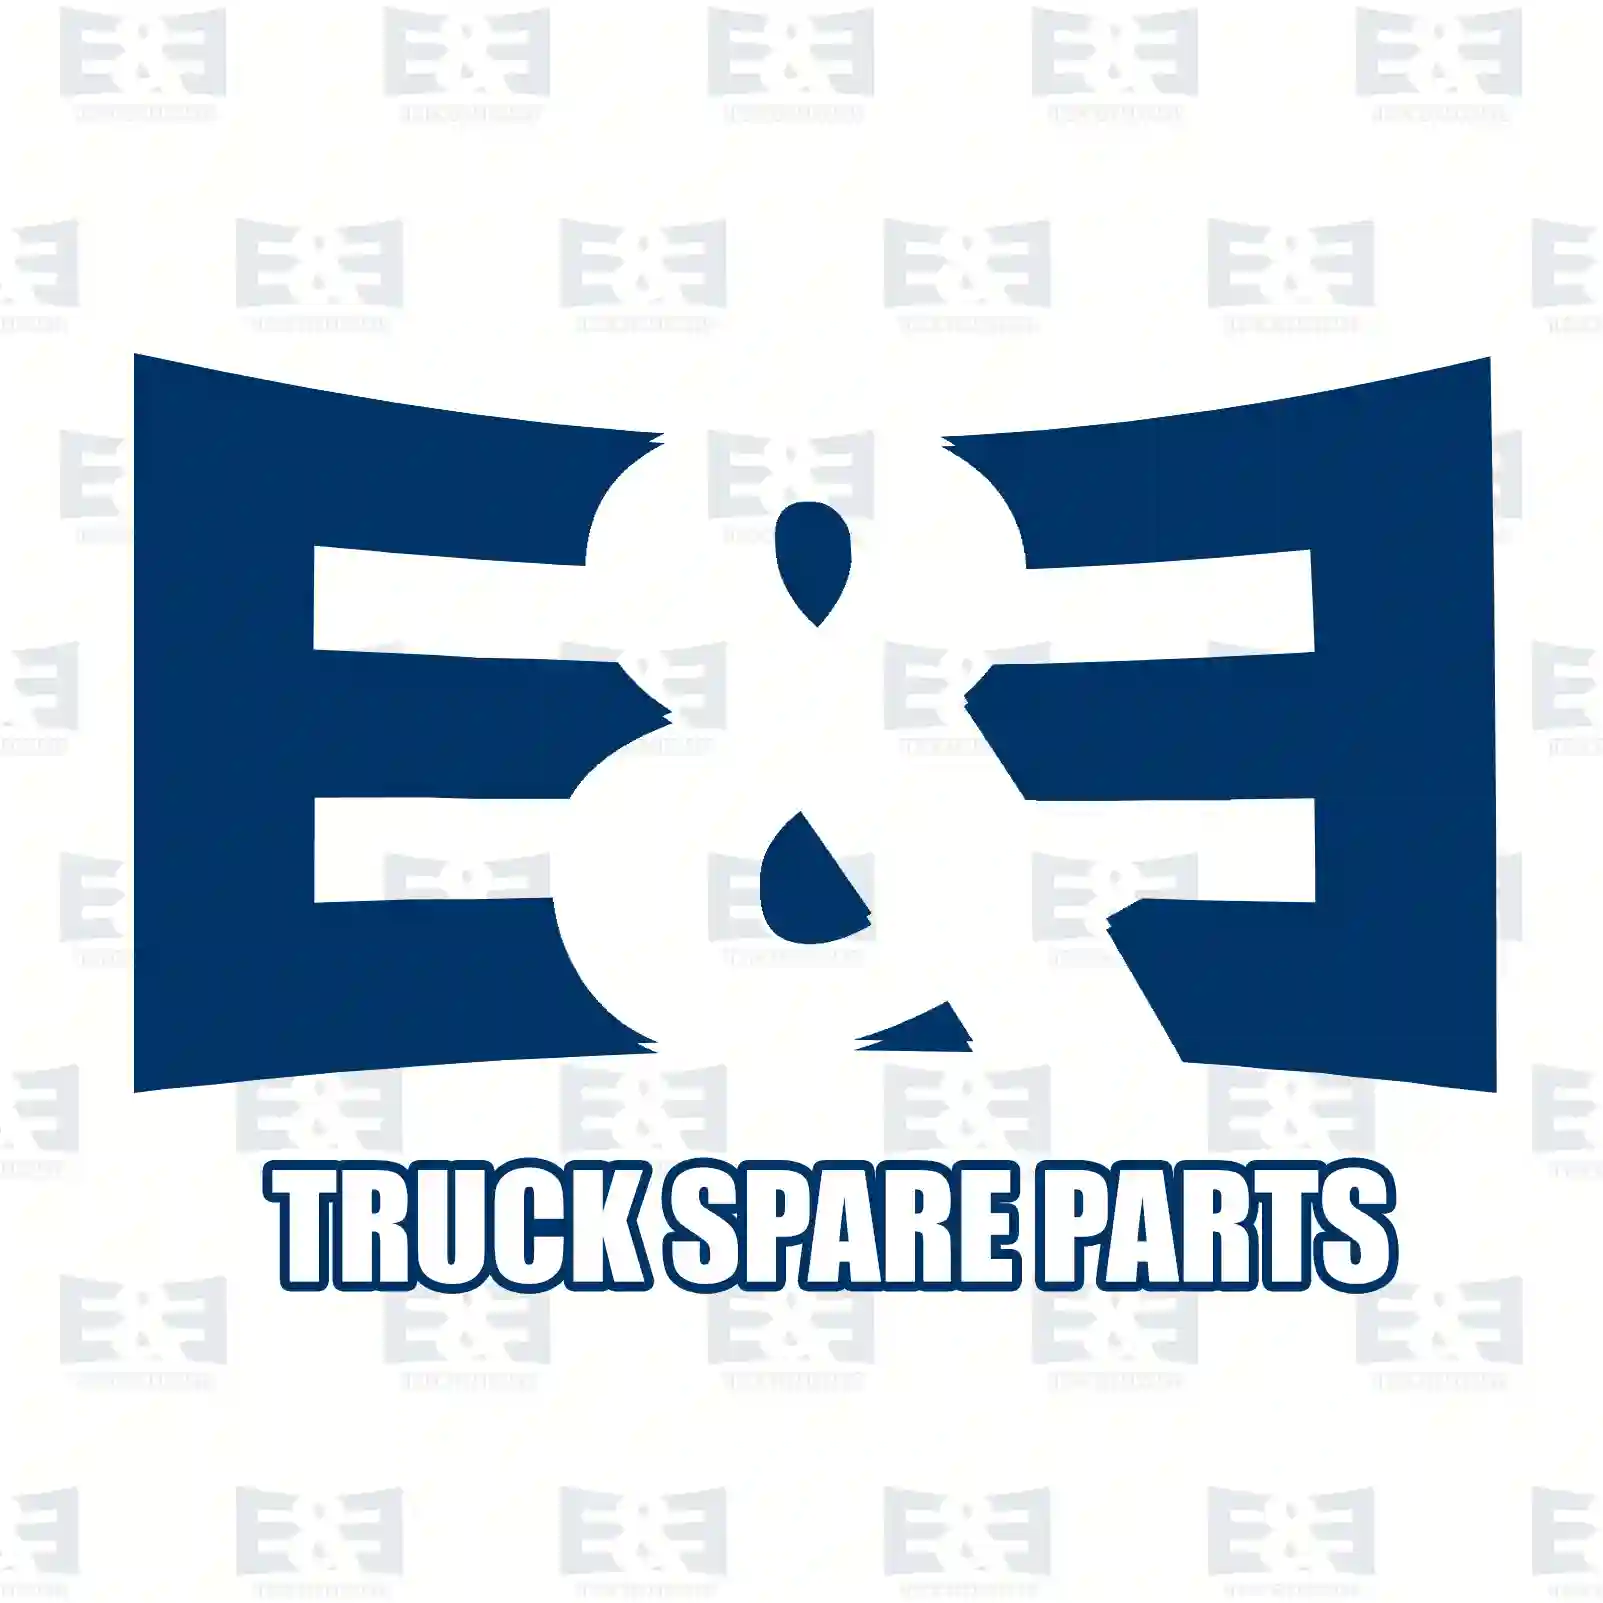 Tapered roller bearing, 2E2286288, 26800620, 988455102B, 1-09812020-0, 9-00093206-0, 26800620, 06324890026, MH043000, 01014-10344, 38326-90001, 4200001400 ||  2E2286288 E&E Truck Spare Parts | Truck Spare Parts, Auotomotive Spare Parts Tapered roller bearing, 2E2286288, 26800620, 988455102B, 1-09812020-0, 9-00093206-0, 26800620, 06324890026, MH043000, 01014-10344, 38326-90001, 4200001400 ||  2E2286288 E&E Truck Spare Parts | Truck Spare Parts, Auotomotive Spare Parts